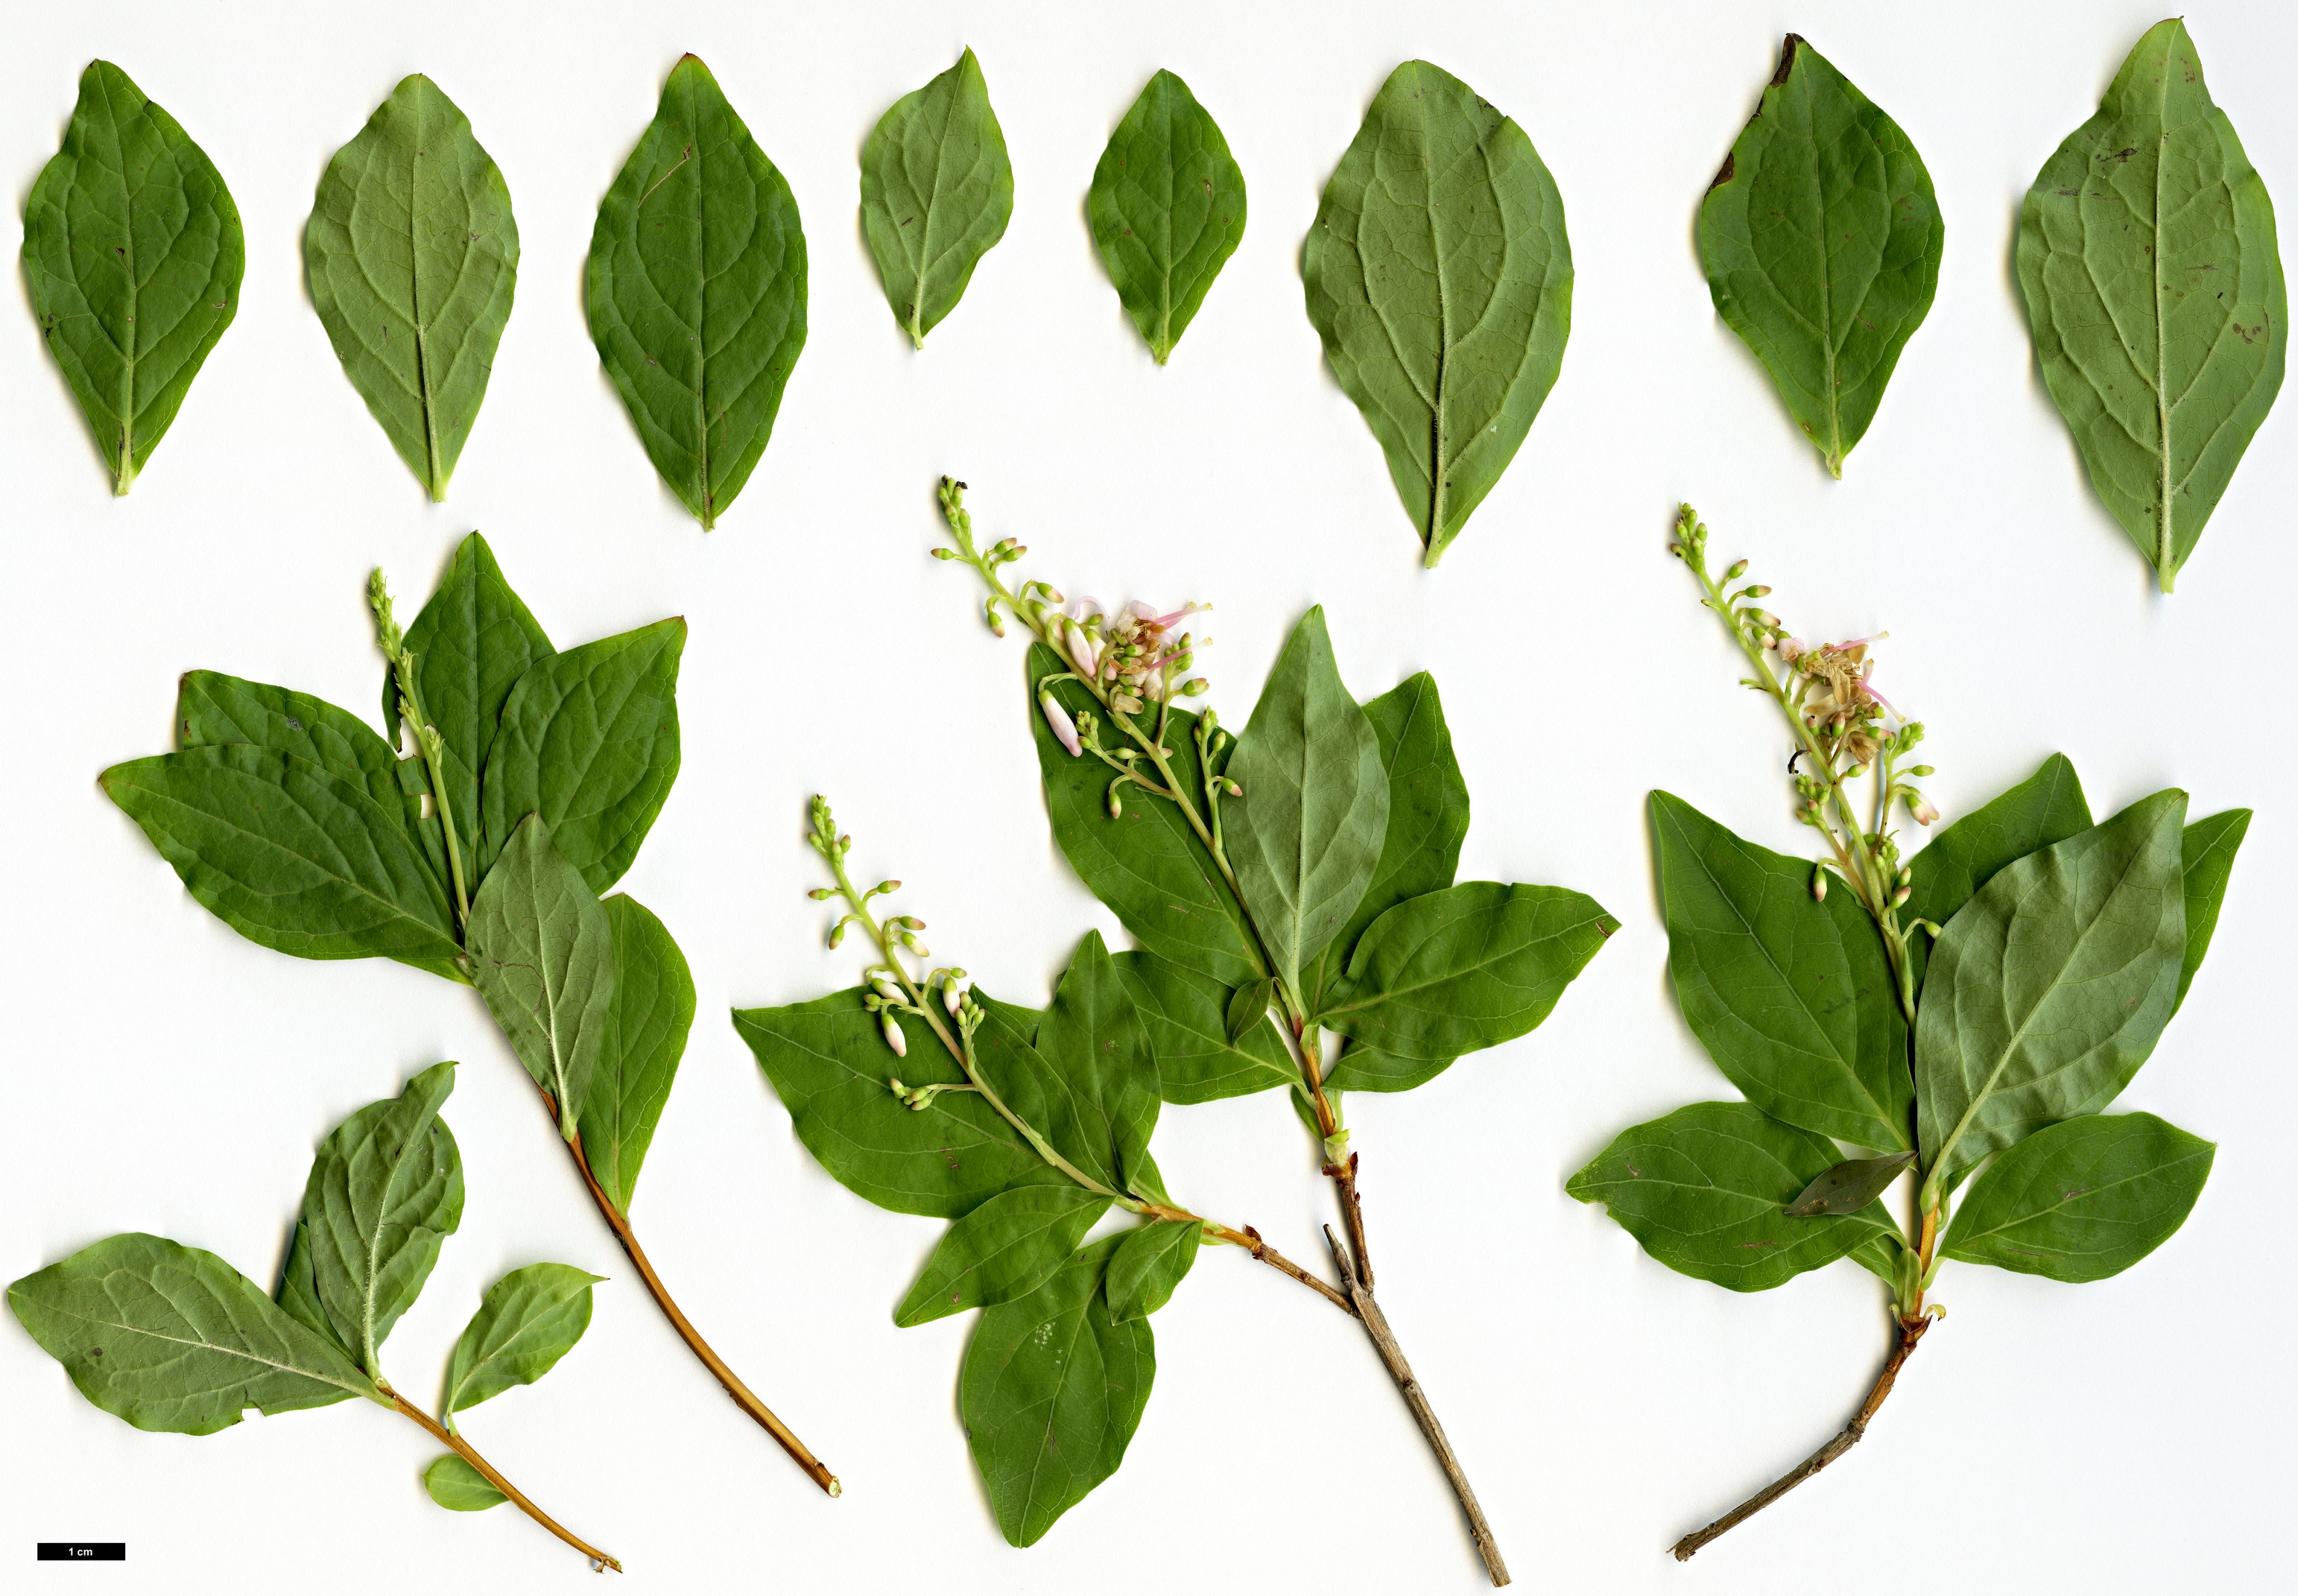 High resolution image: Family: Ericaceae - Genus: Ellliottia - Taxon: paniculata